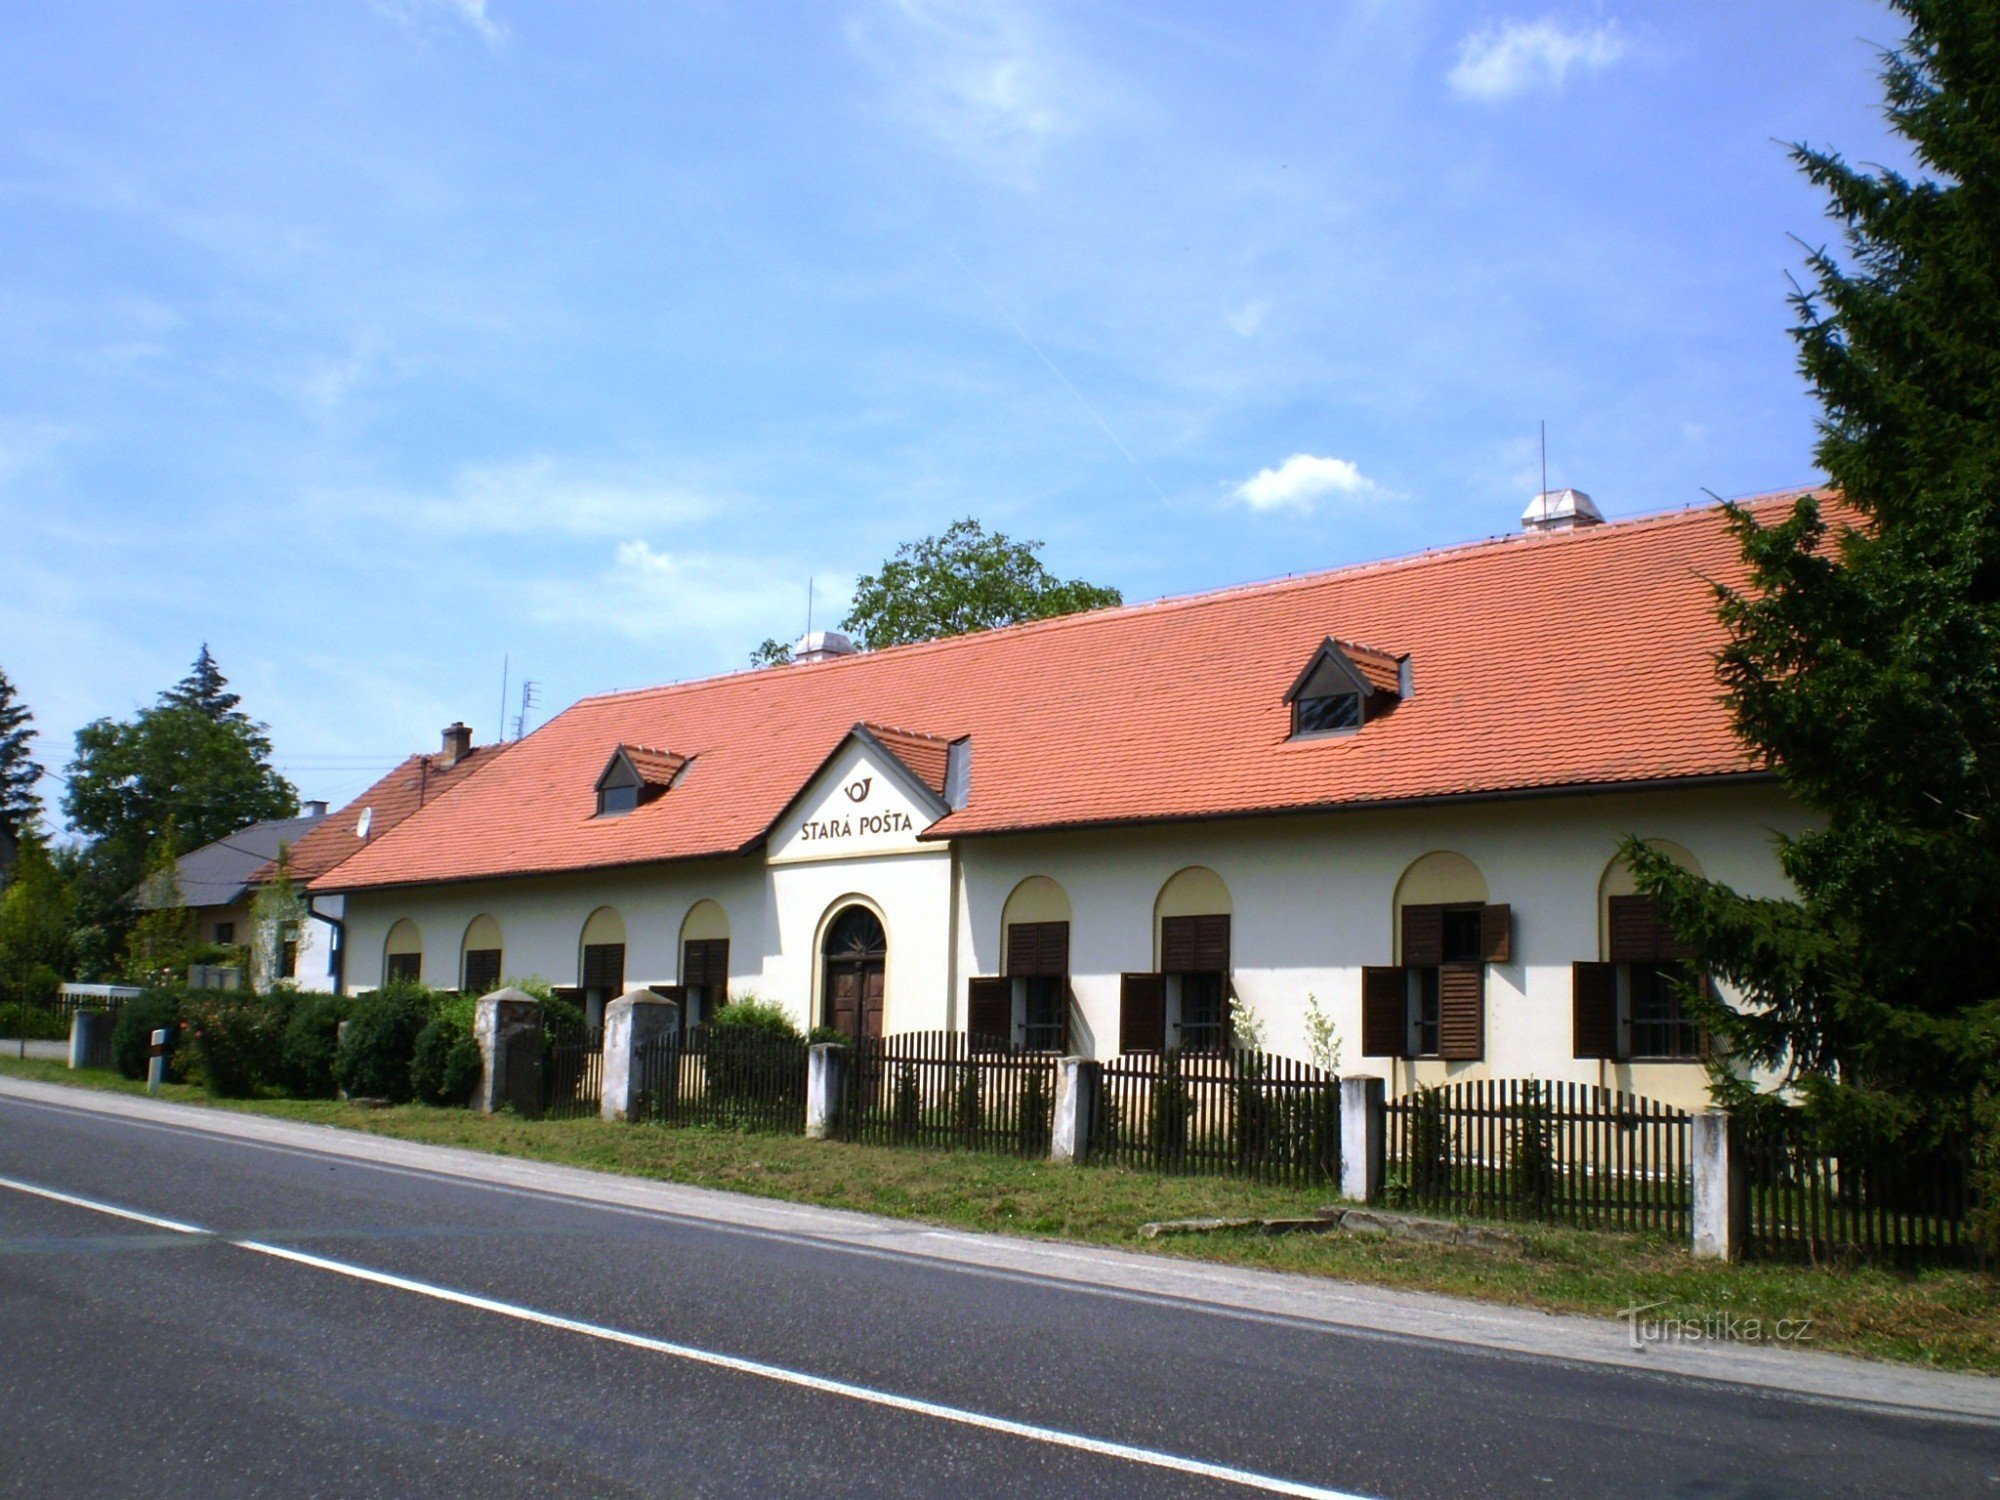 Stara poczta (przy starej drodze Brno-Vyškov)